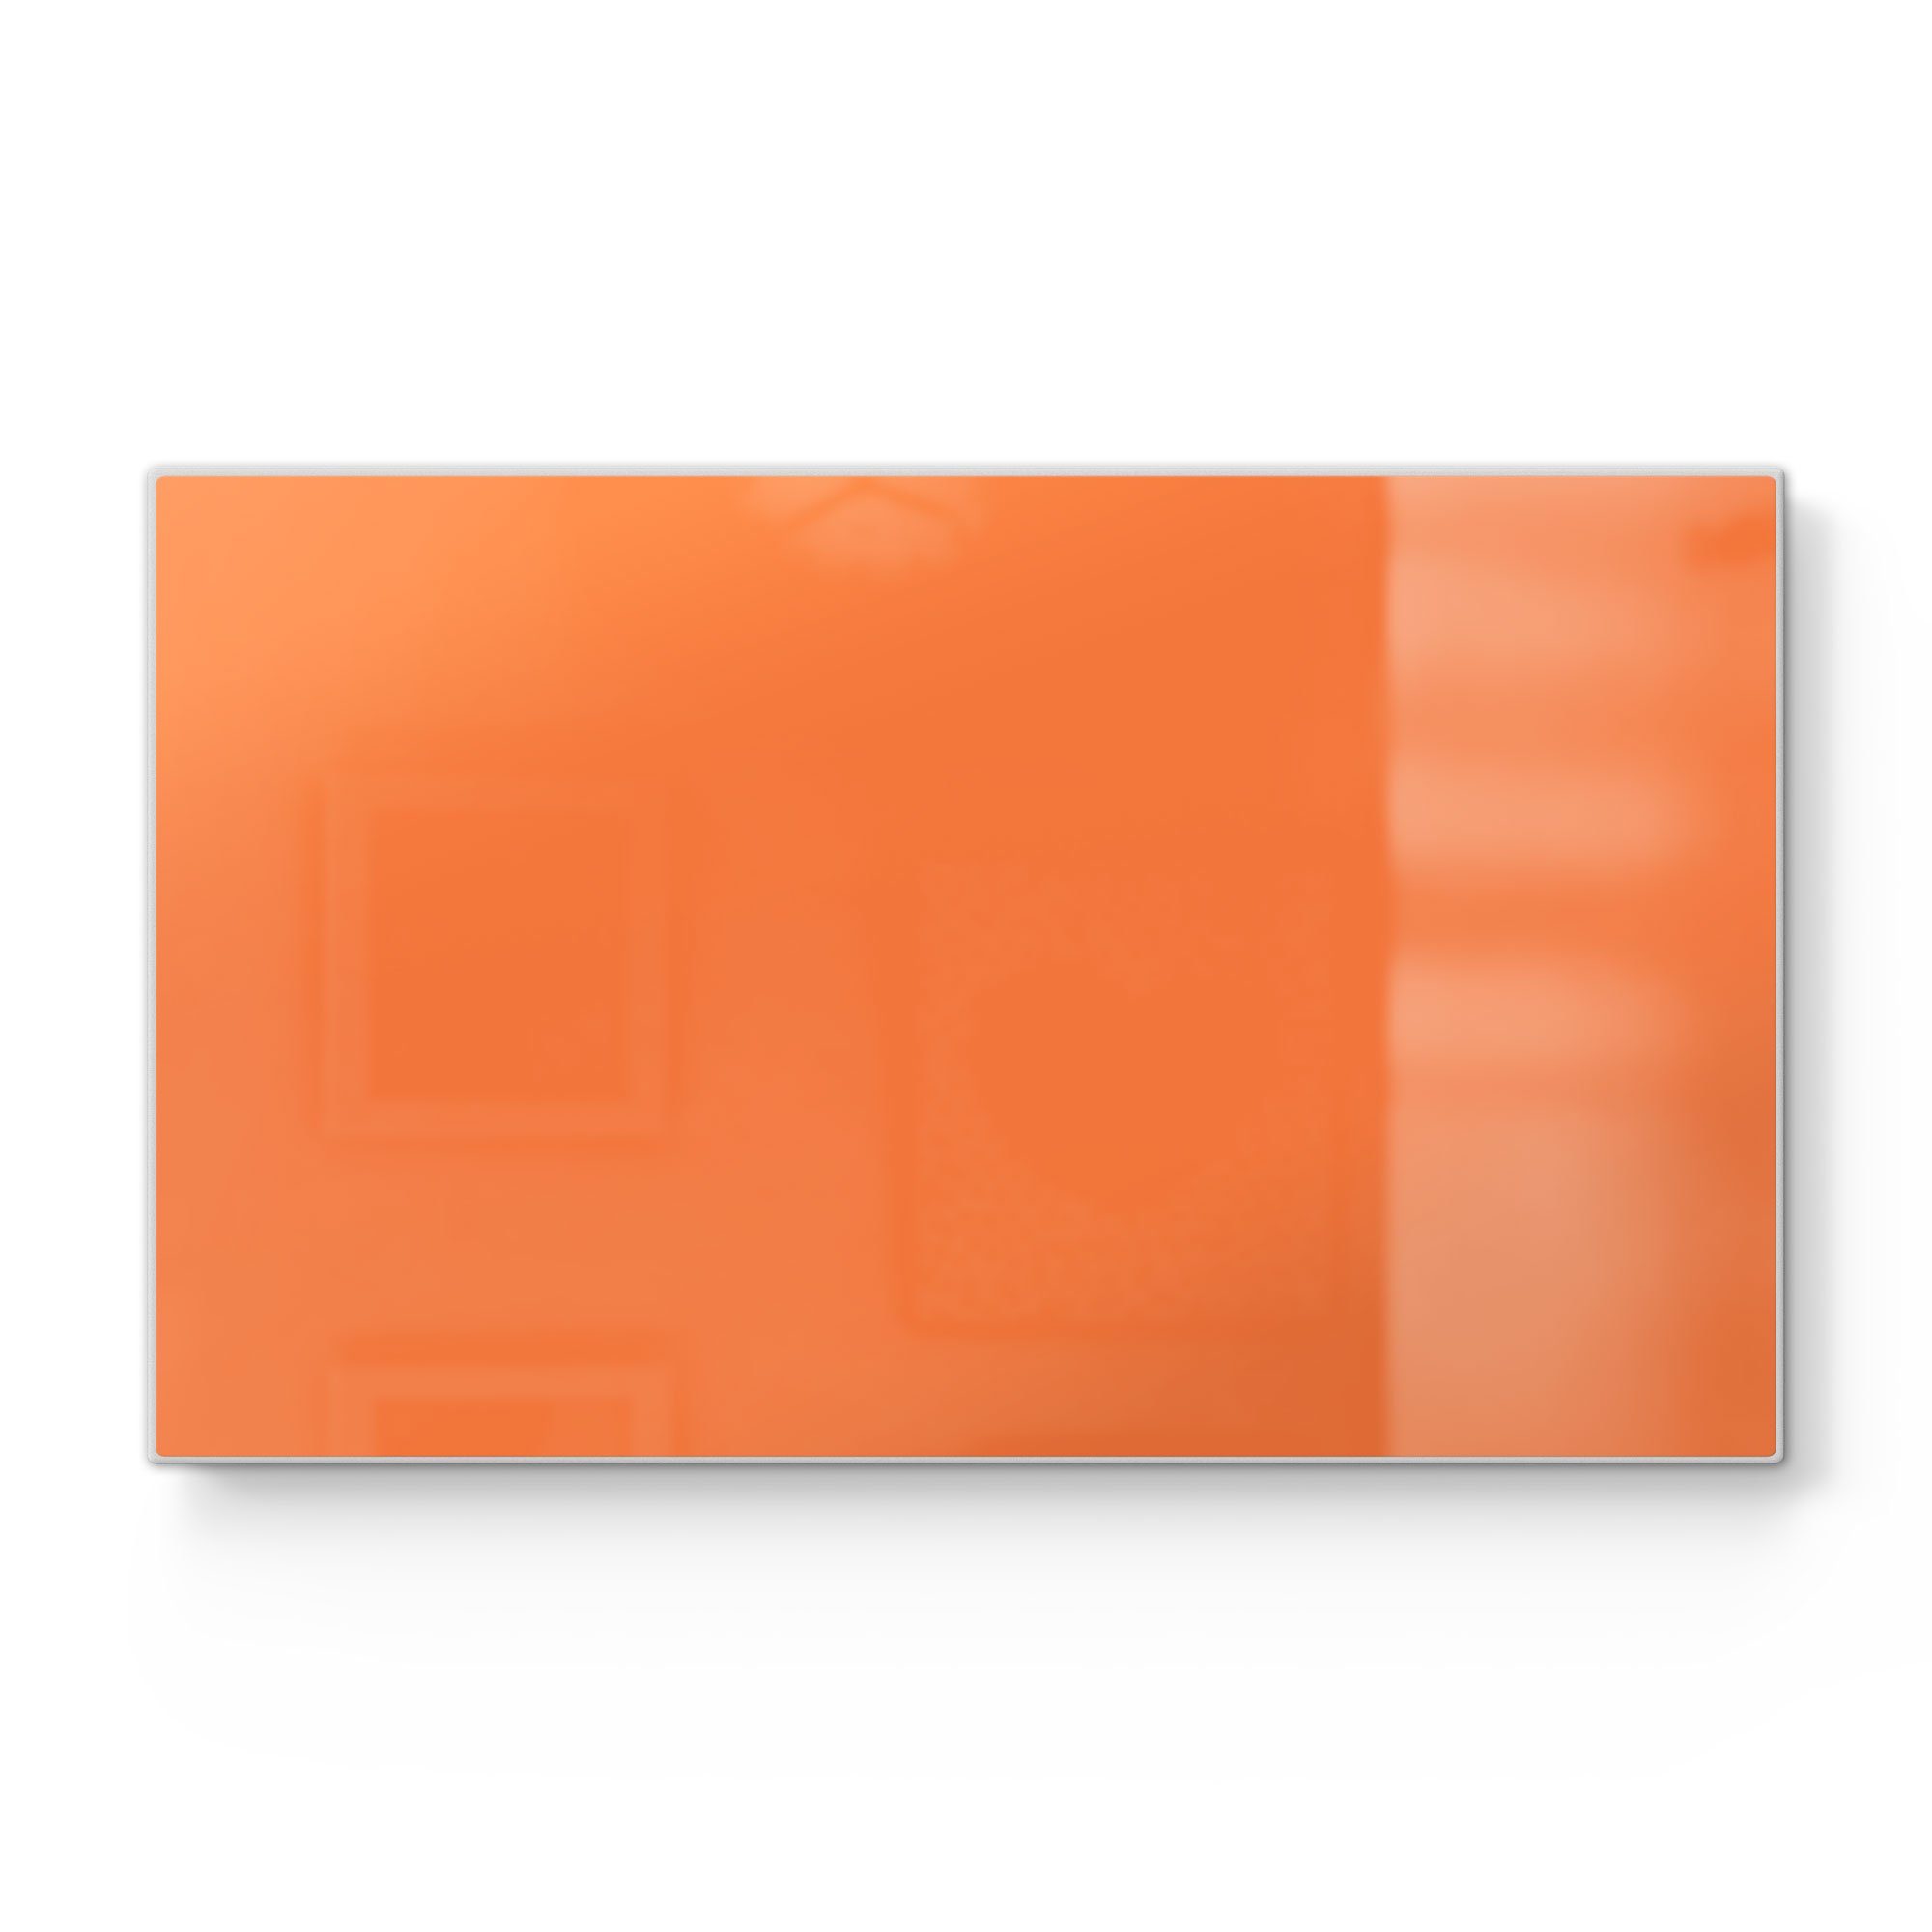 DEQORI Schneidebrett 'Unifarben - Orange', Glas, Platte Frühstücksbrett Schneideplatte